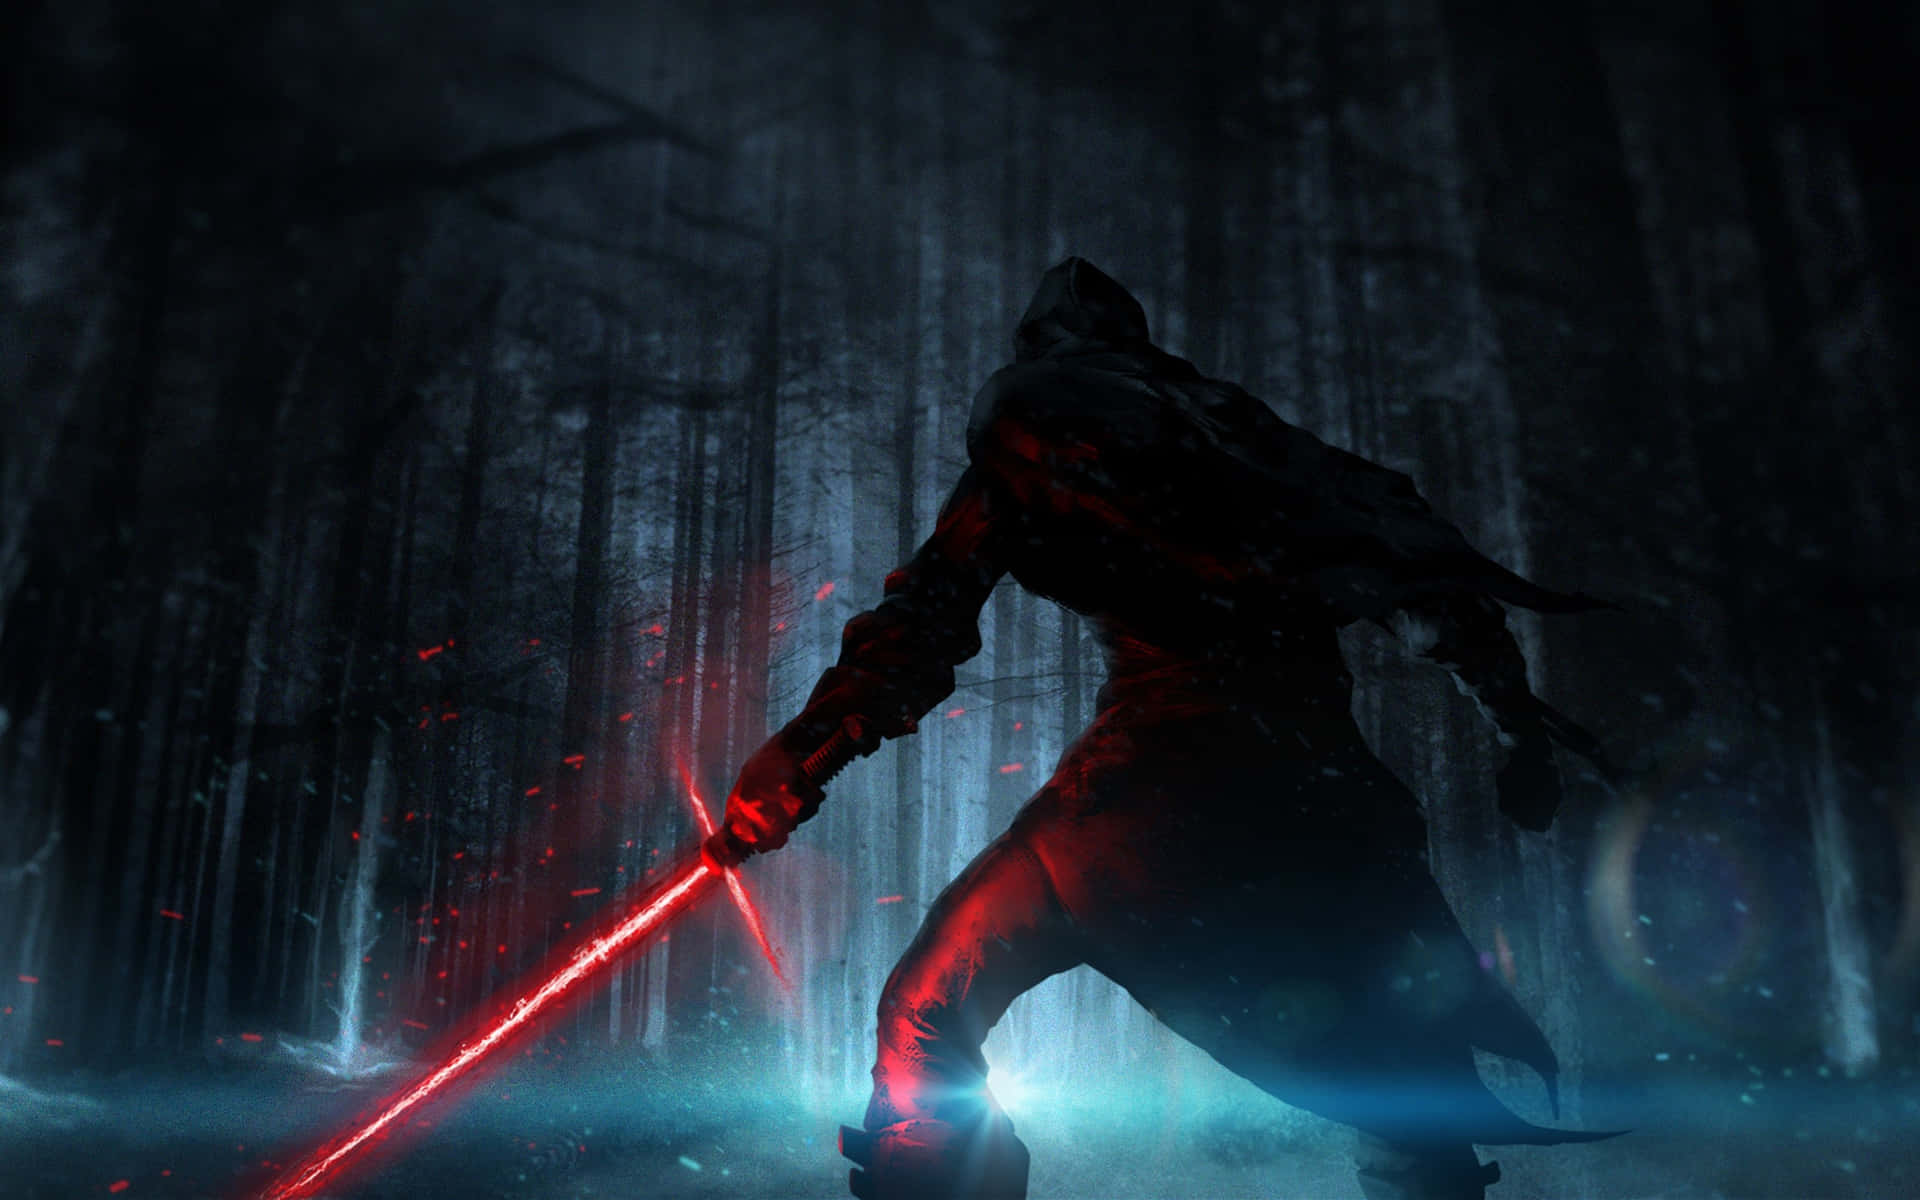 Reytar Sig An Uppdraget Att Hitta Luke Skywalker I Star Wars: The Force Awakens. Wallpaper